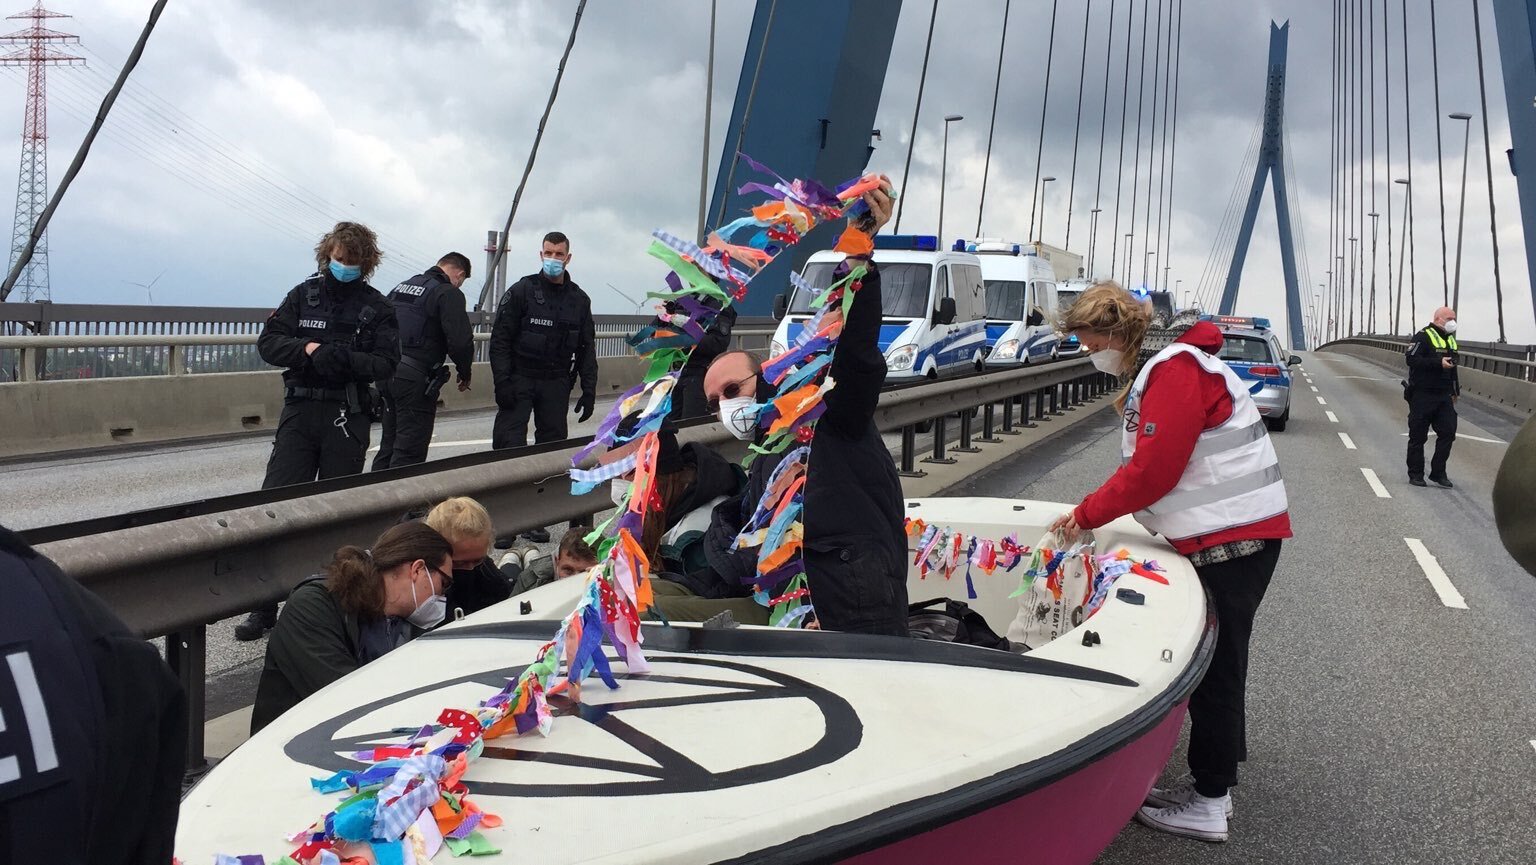 Aktivist:innen der Gruppe Extinction Rebellion blockieren mit einem Boot die Hamburger Köhlbrandbrücke